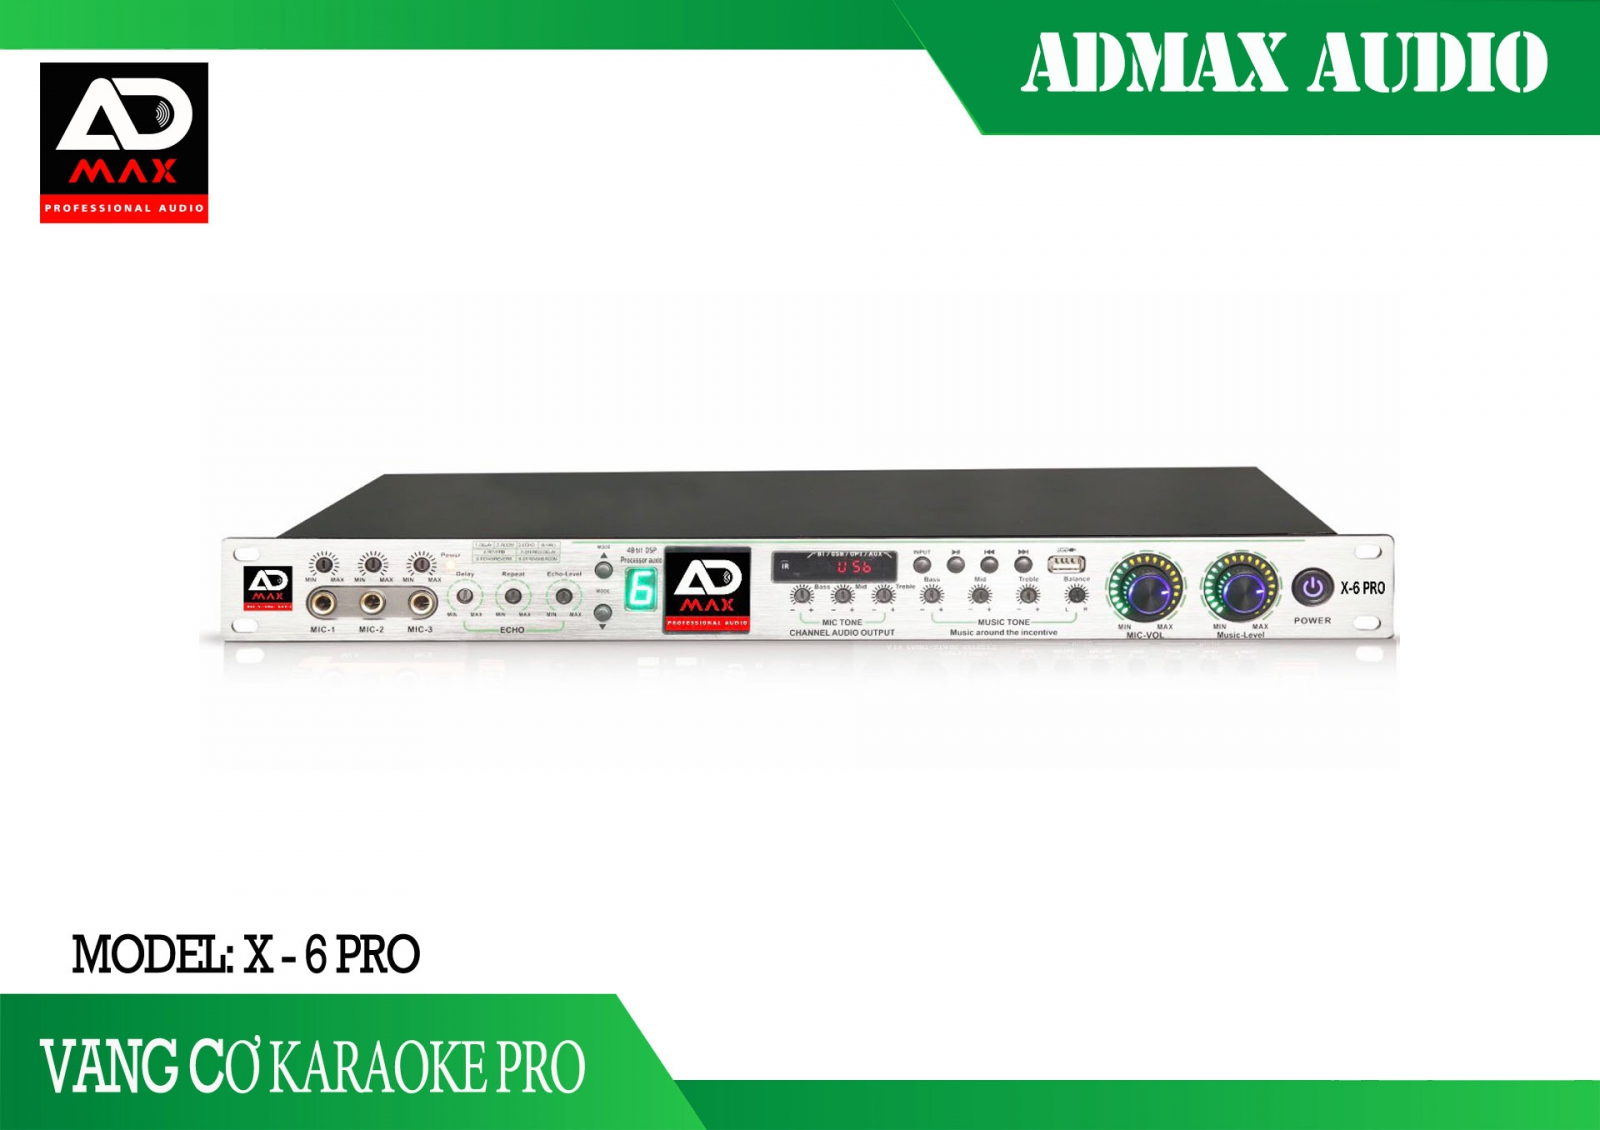 ADmax x6-pro